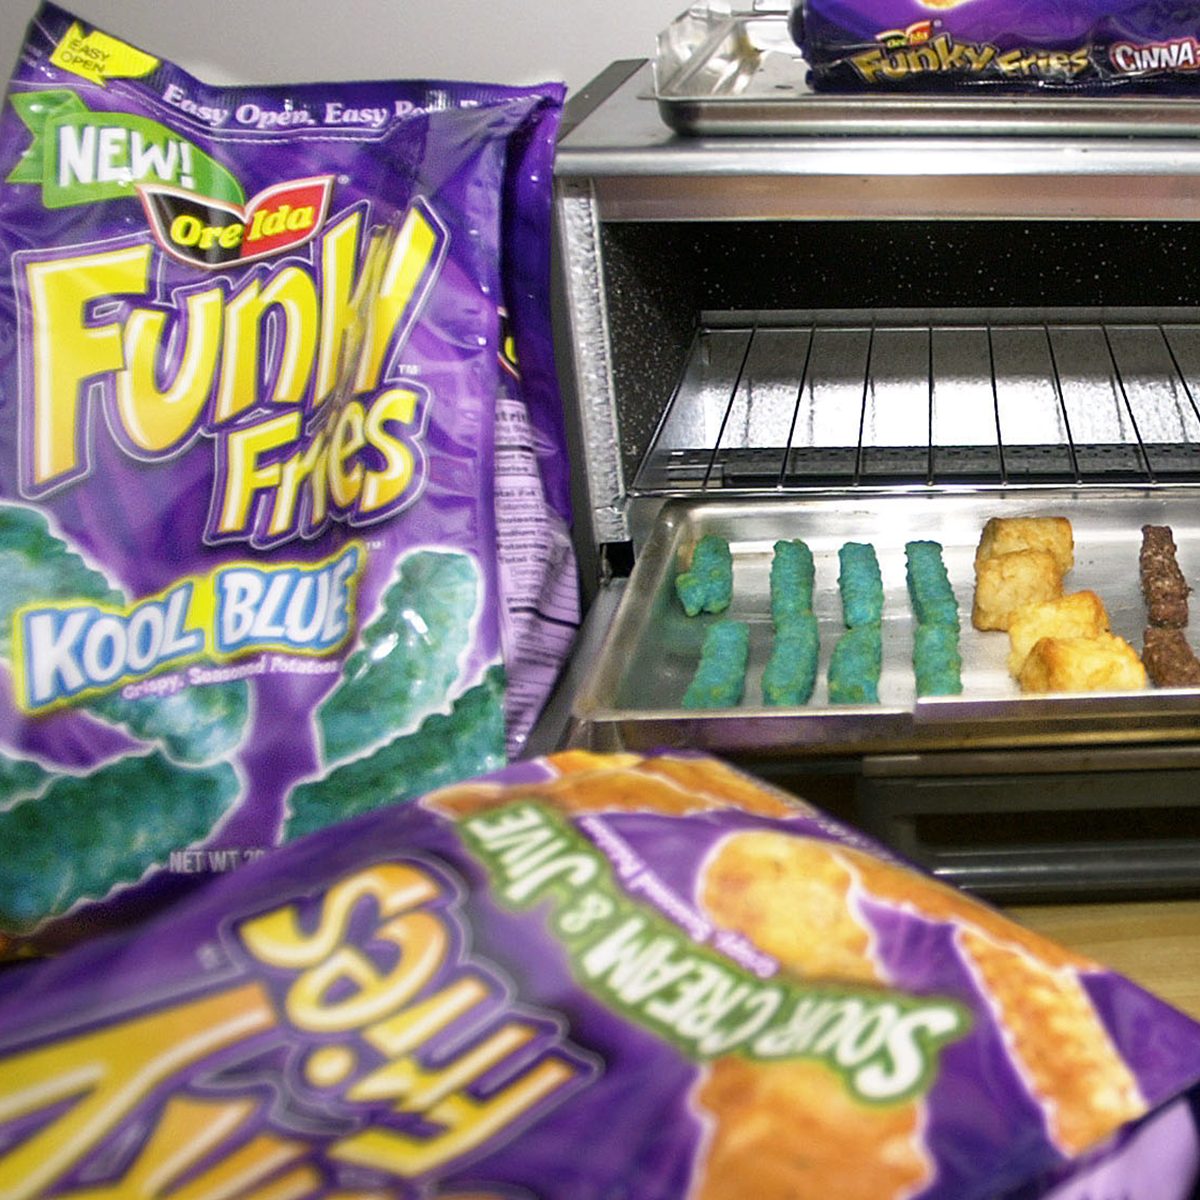 亨氏公司(H.J. Heinz Co.)通过Ore-Ida品牌营销的新款“时髦薯条”(FUNKY FRIES)的包装围绕着一个烤面包机，左边是“Kool Blue”，中间是“Crunchy Rings”，右边是“Cocoa Crispers”，这些都是在匹兹堡准备的品种。从5月开始，亨氏公司将推出一系列新的Ore-Ida冷冻土豆产品，名为“时髦薯条”，具有五种新的形状、颜色和口味，所有这些都是为了让孩子们对父母的杂货店清单有更多的决定权